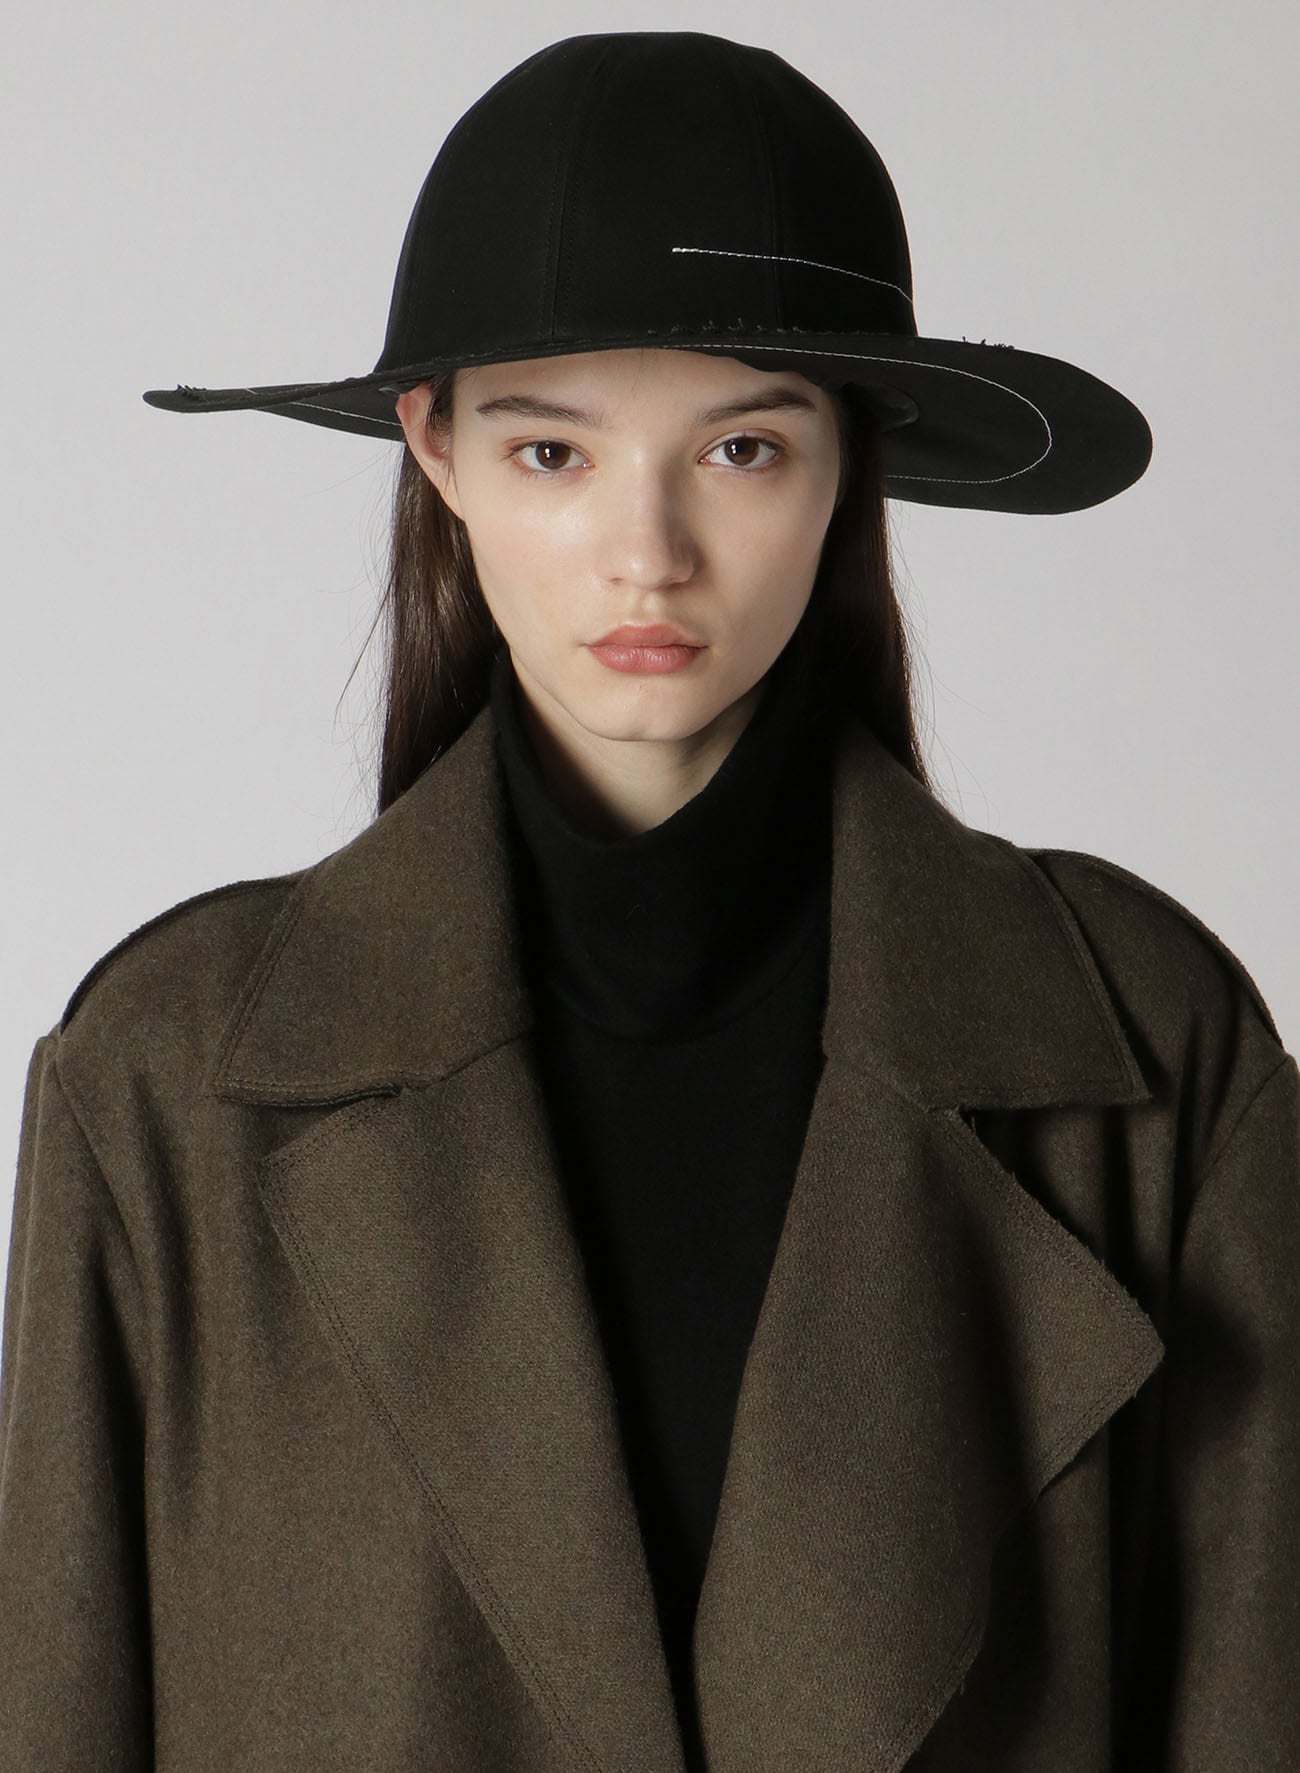 CHINO CLOTH BOWLER HAT